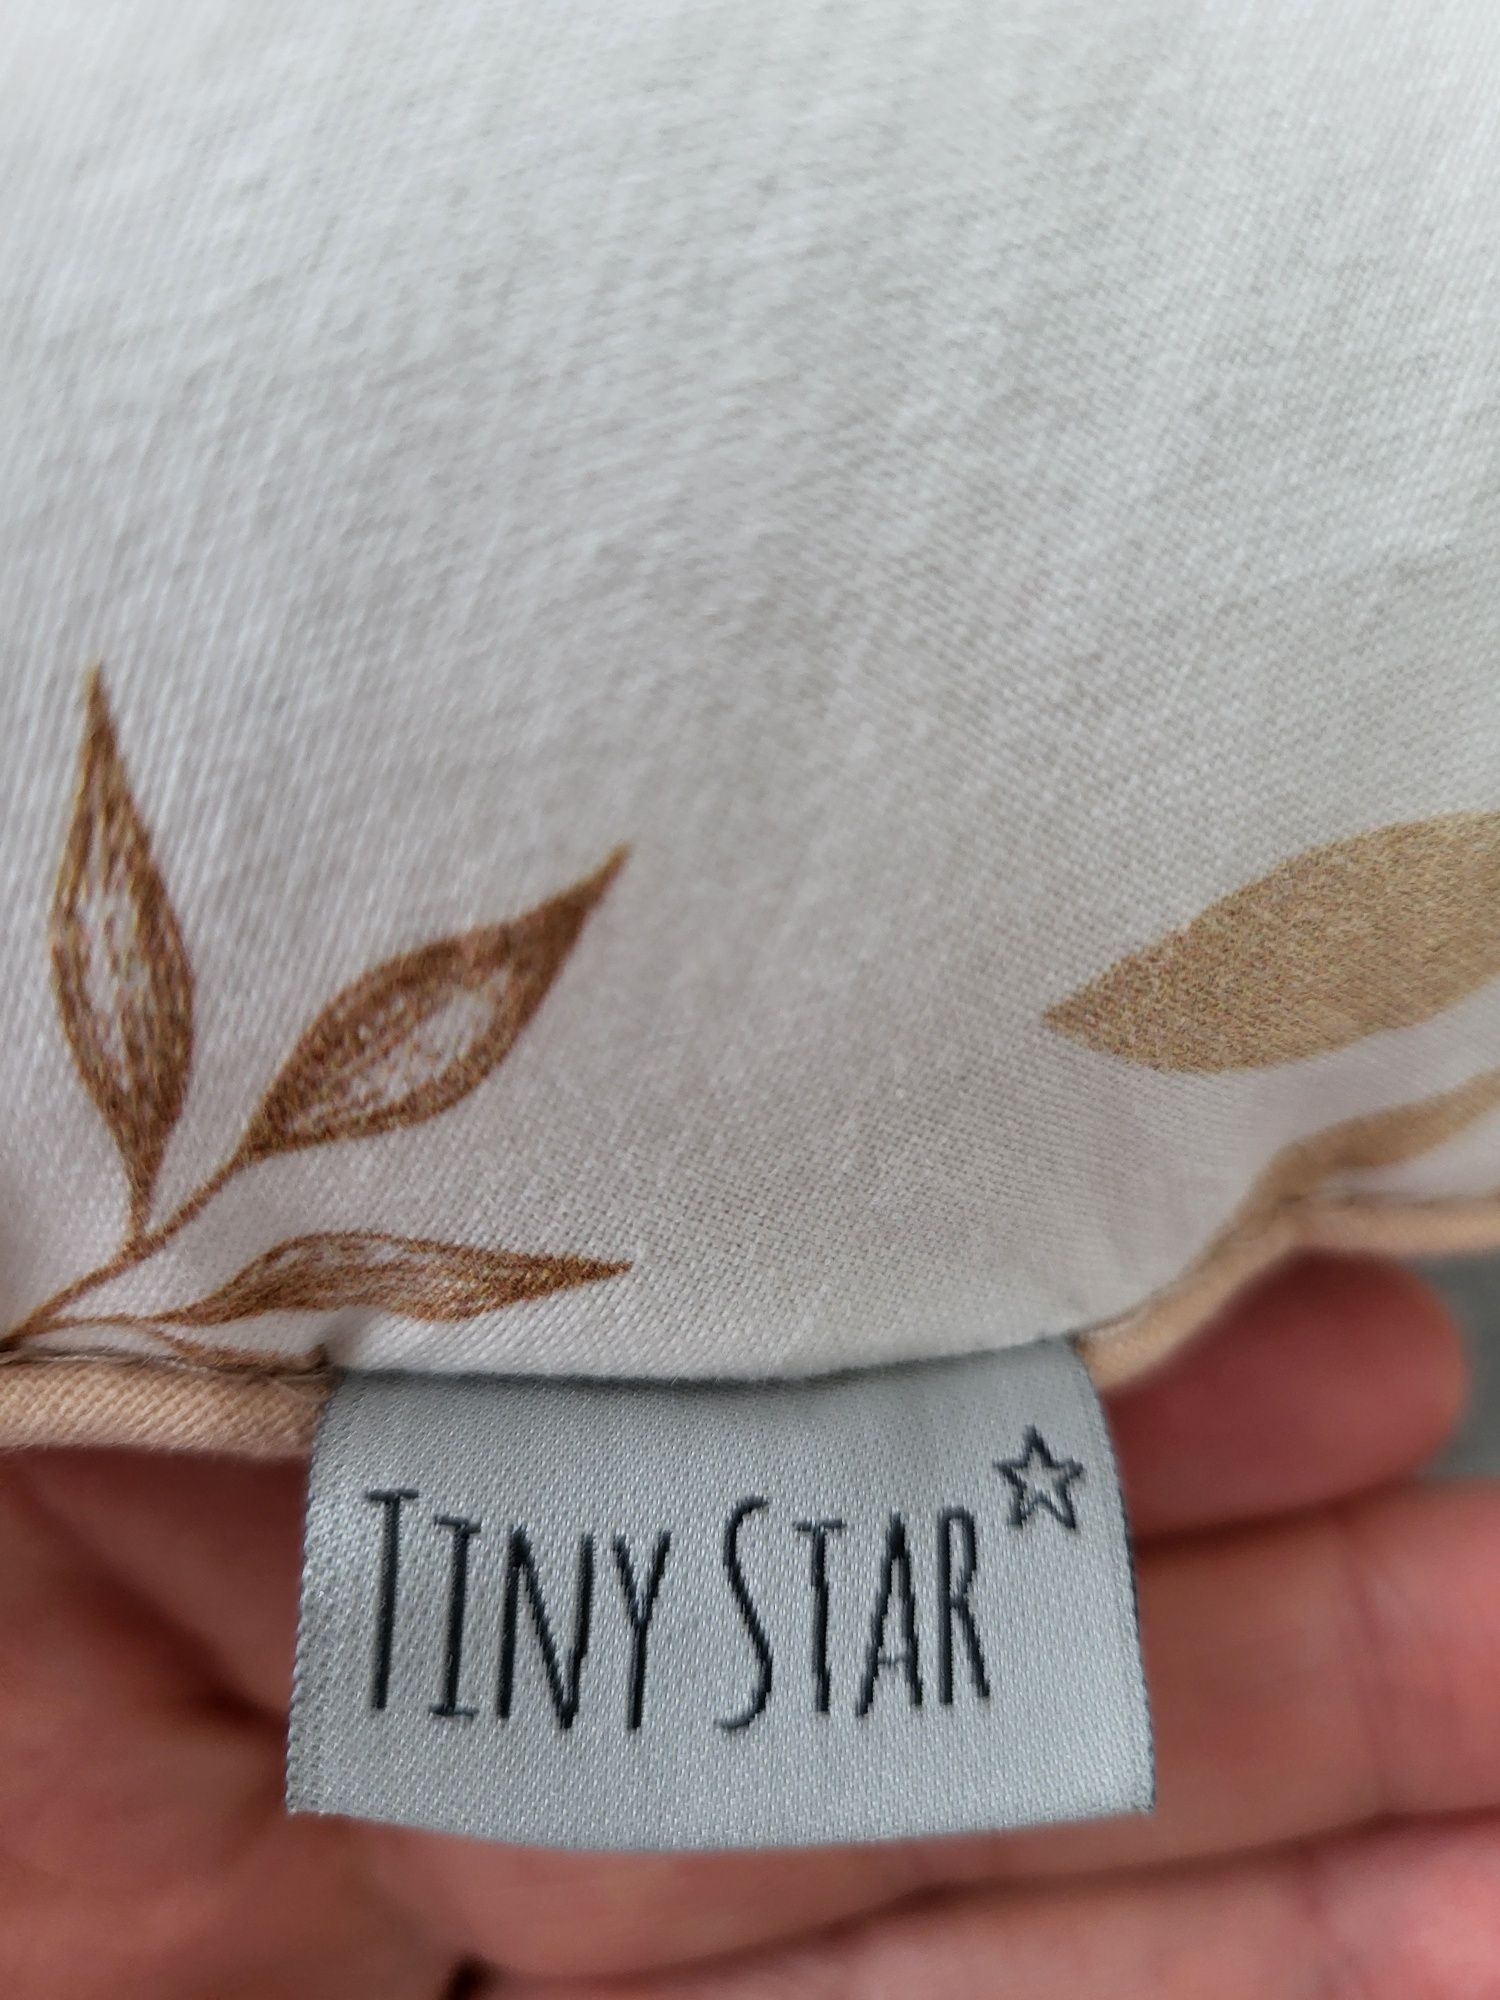 Poduszka do karmienia TinyStar